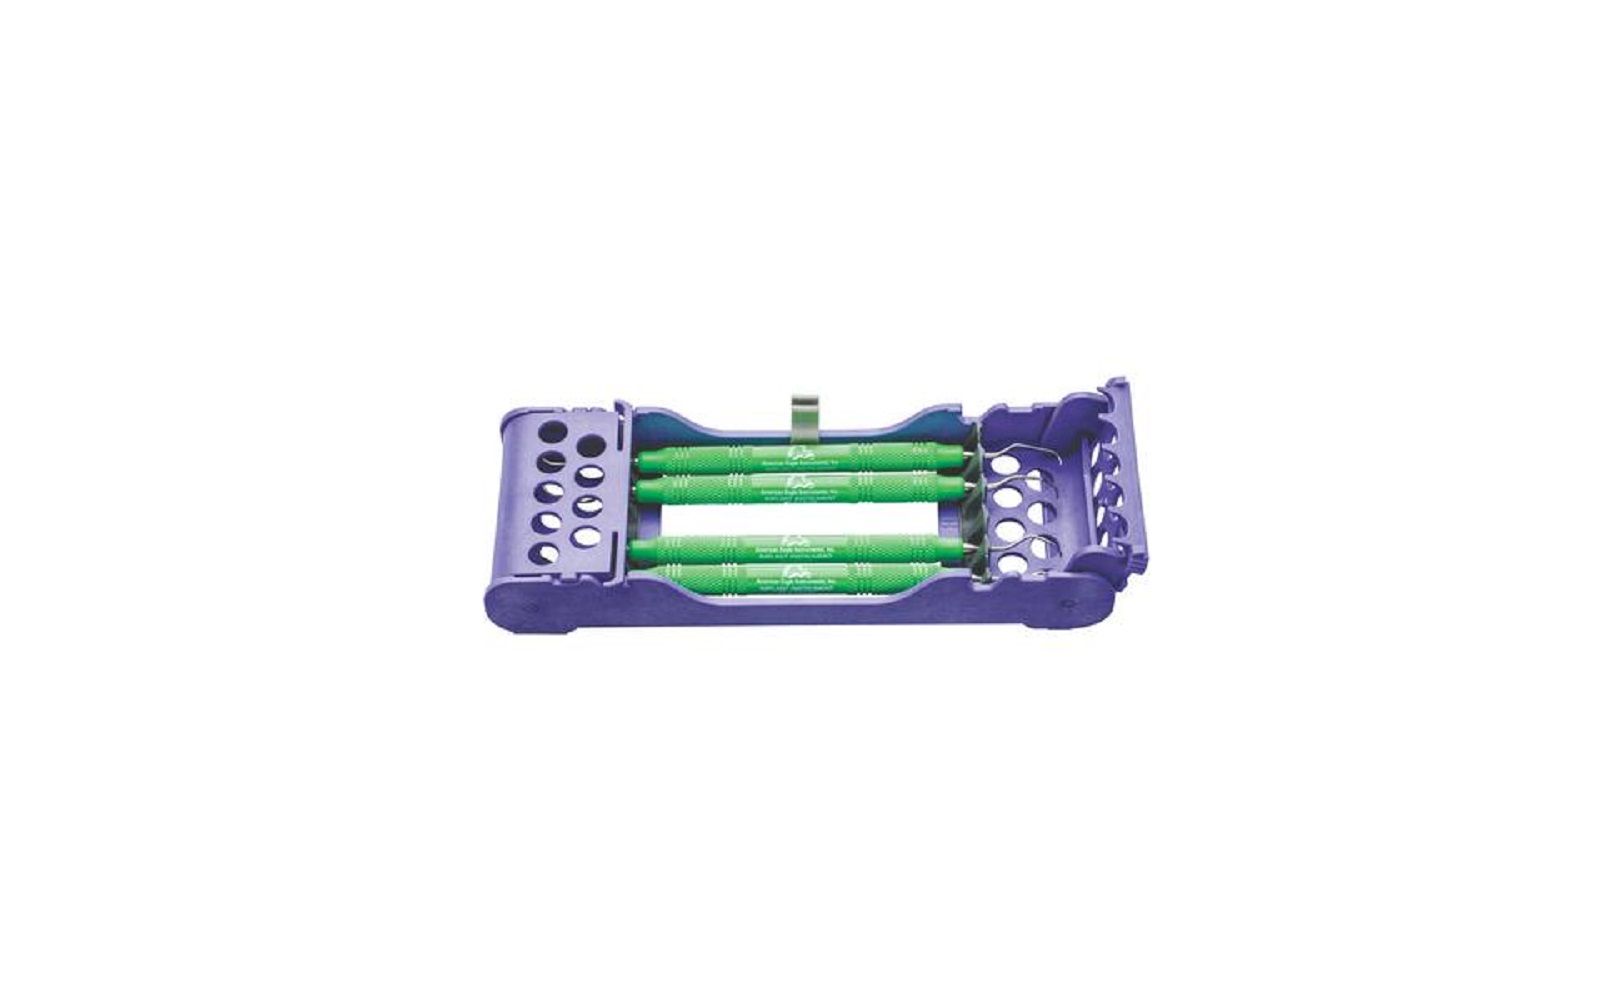 Titanium implant instruments – kit with purple zirc cassette